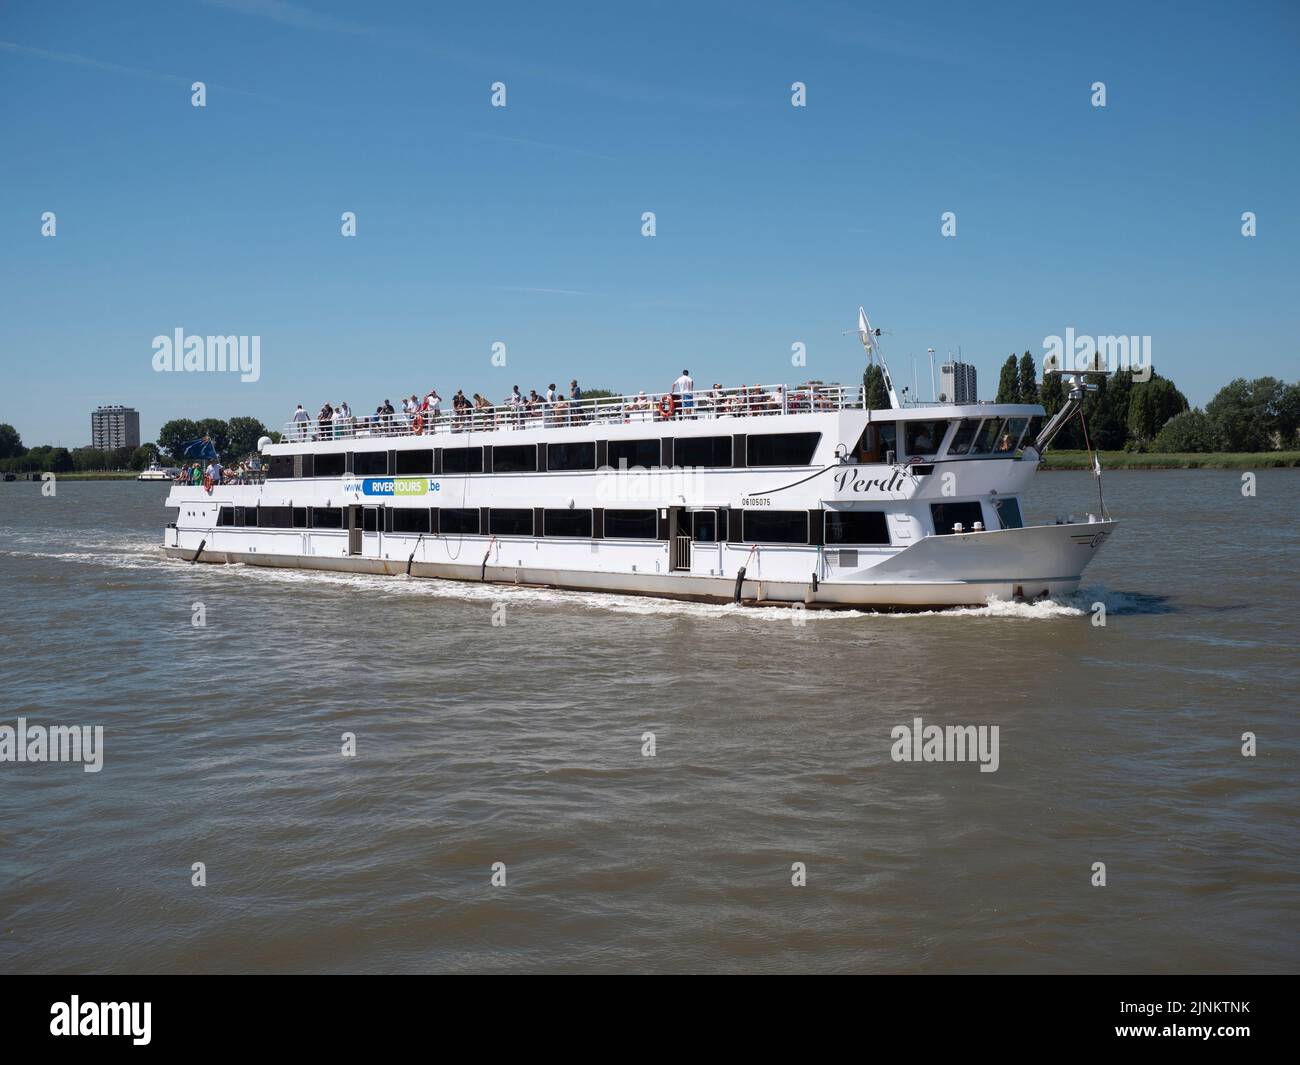 Anvers, Belgique, 24 juillet 2022, le Verdi de Rivertours, un navire à trois ponts navigue pendant les courses de grands navires sur l'Escaut à Anvers Banque D'Images